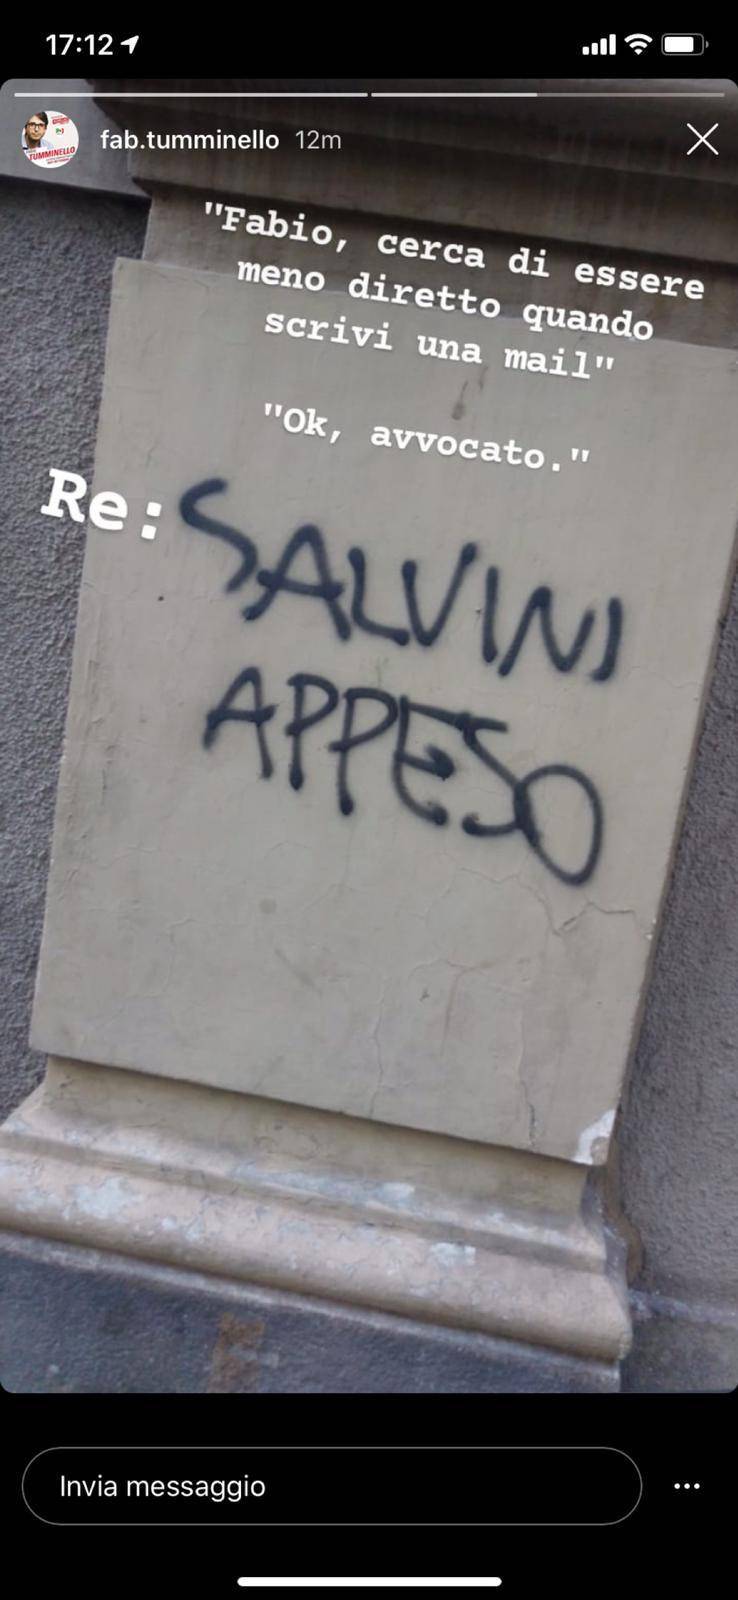 "Salvini appeso"